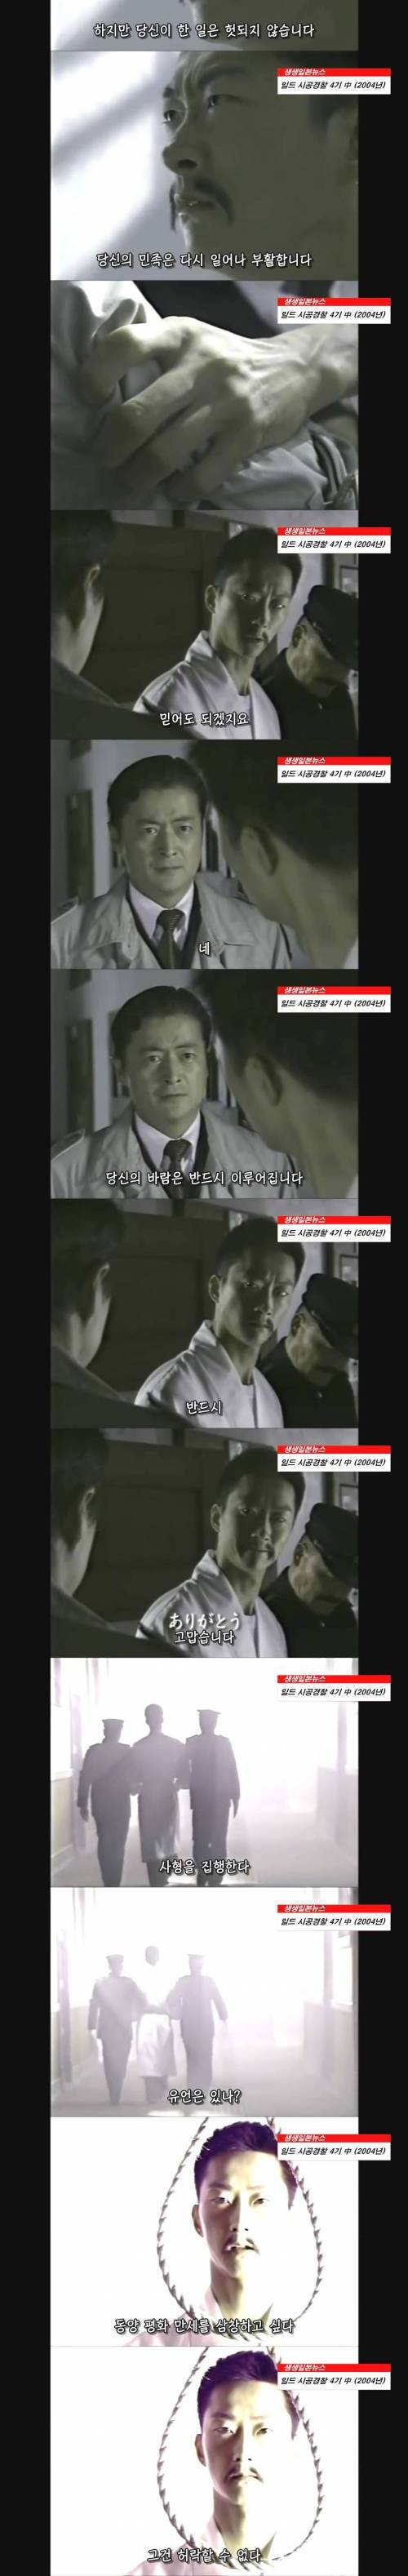 [스압] 일본 드라마에 등장한 안중근 의사.jpg